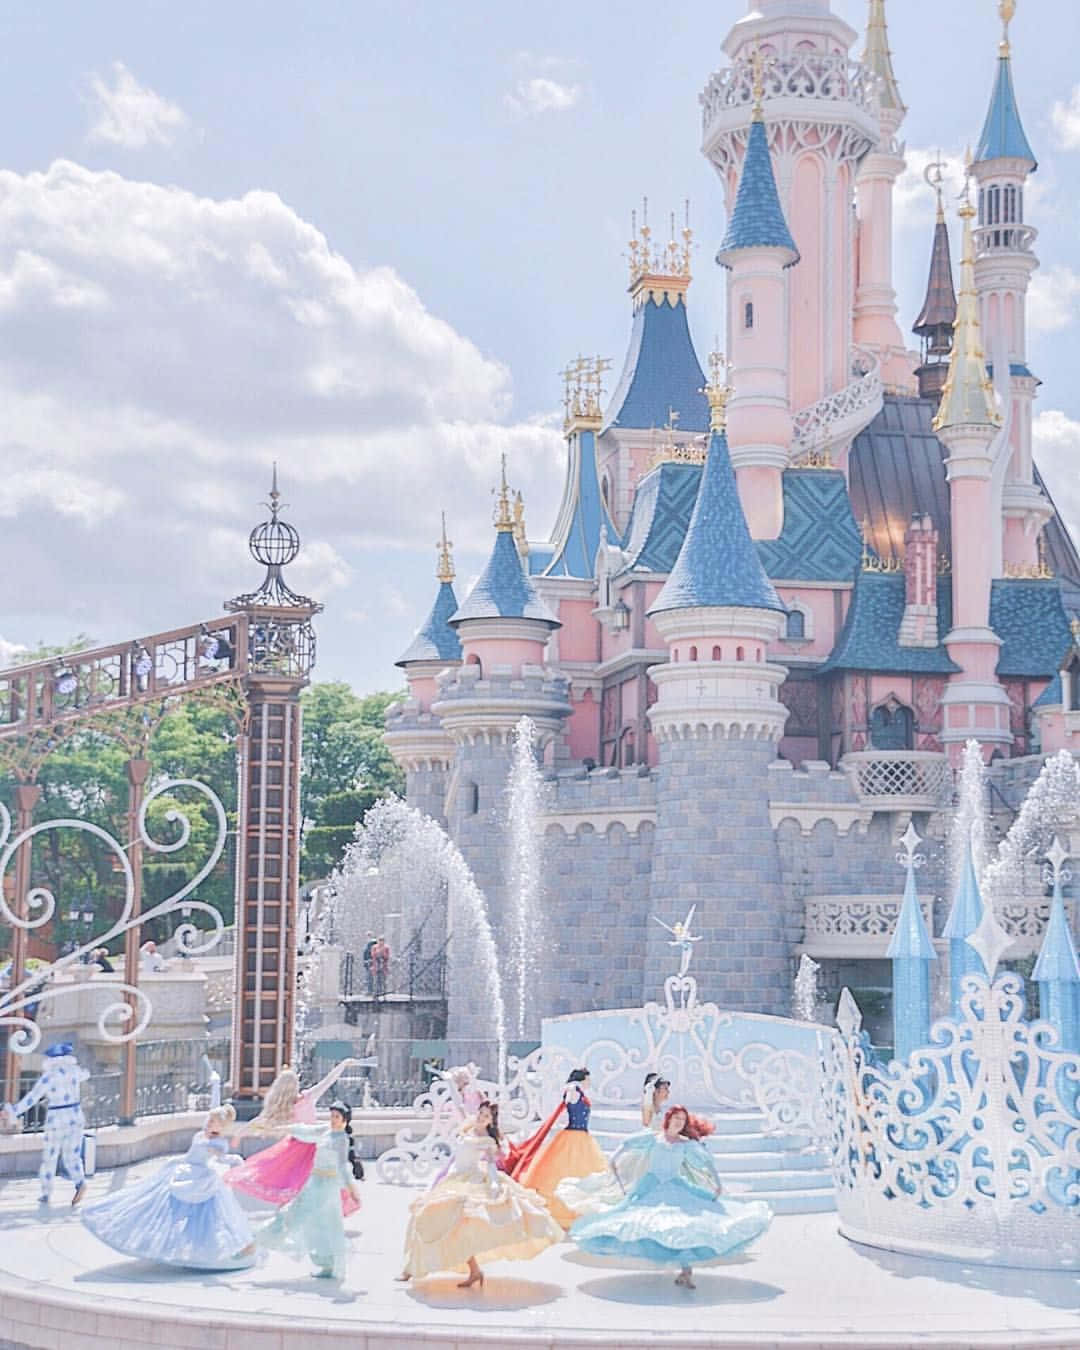 Diesesmagische Bild Fängt Die Spannende Atmosphäre Und Abenteuer Ein, Die Sie Im Disneyland Erwarten.